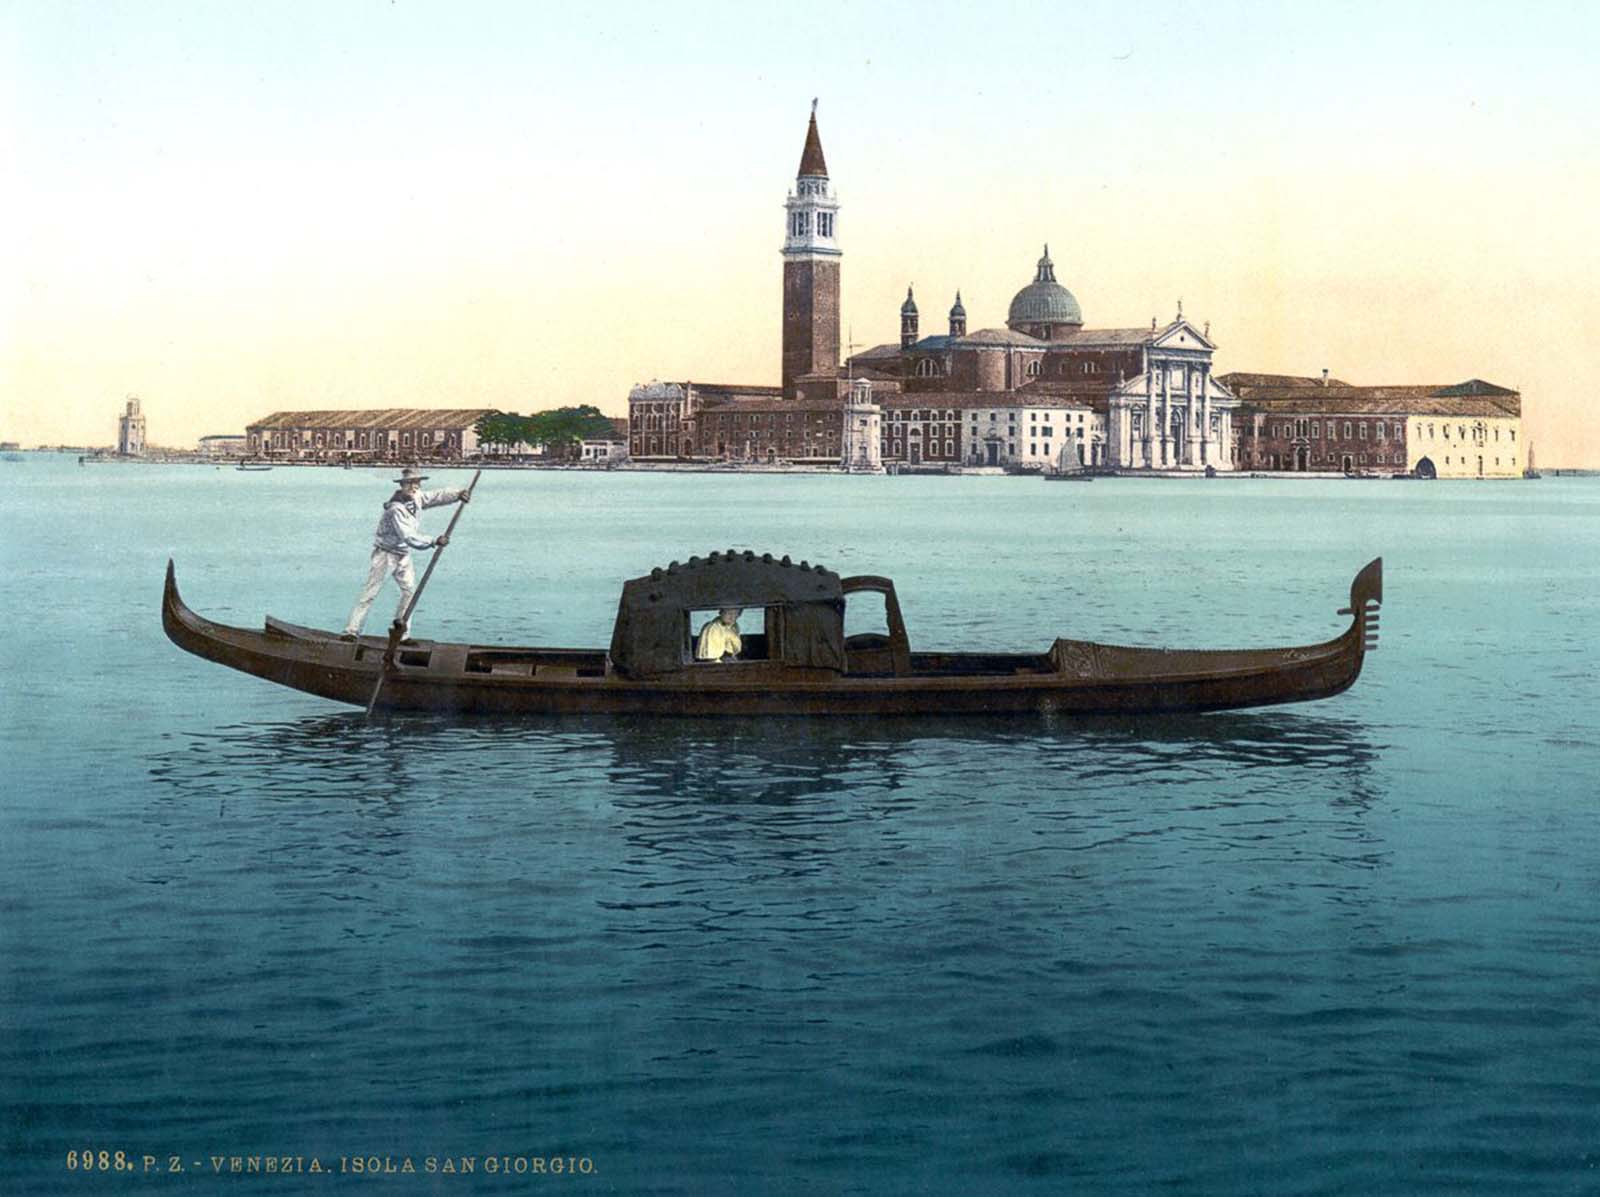 Venise dans de belles images anciennes en couleurs, 1890